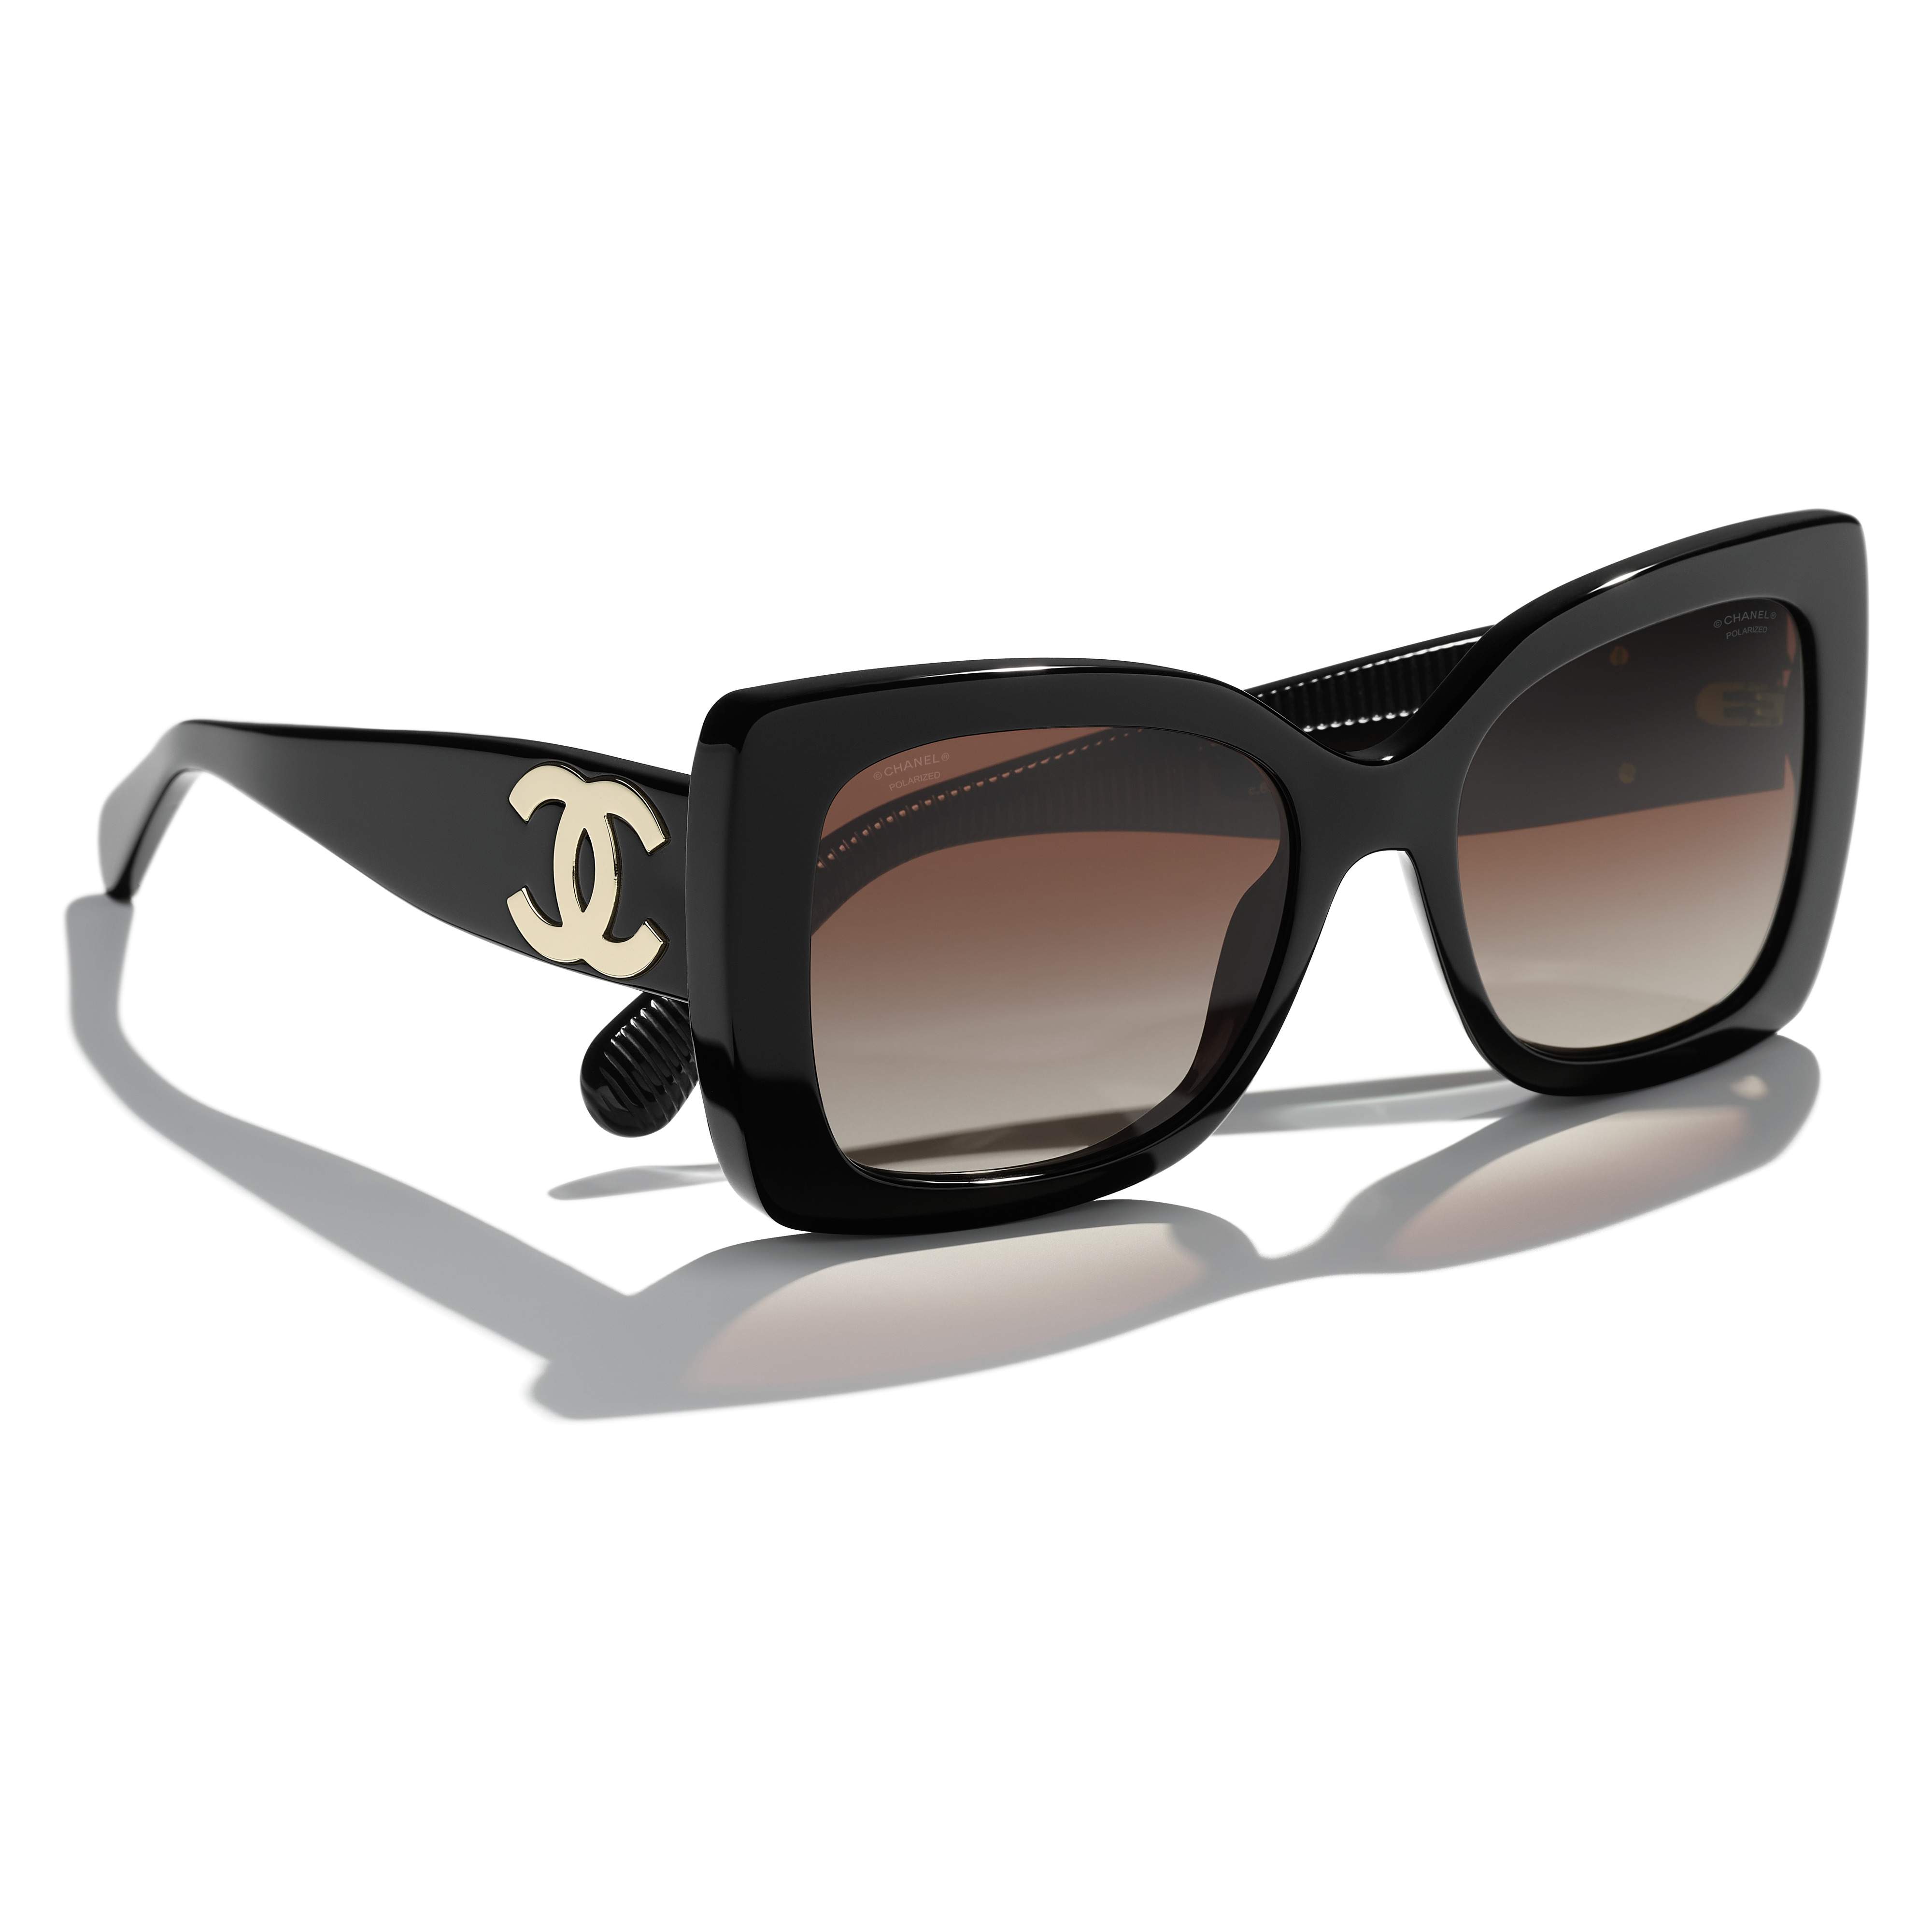 Sunglasses CHANEL CH5494 C622S9 53-18 Black in stock